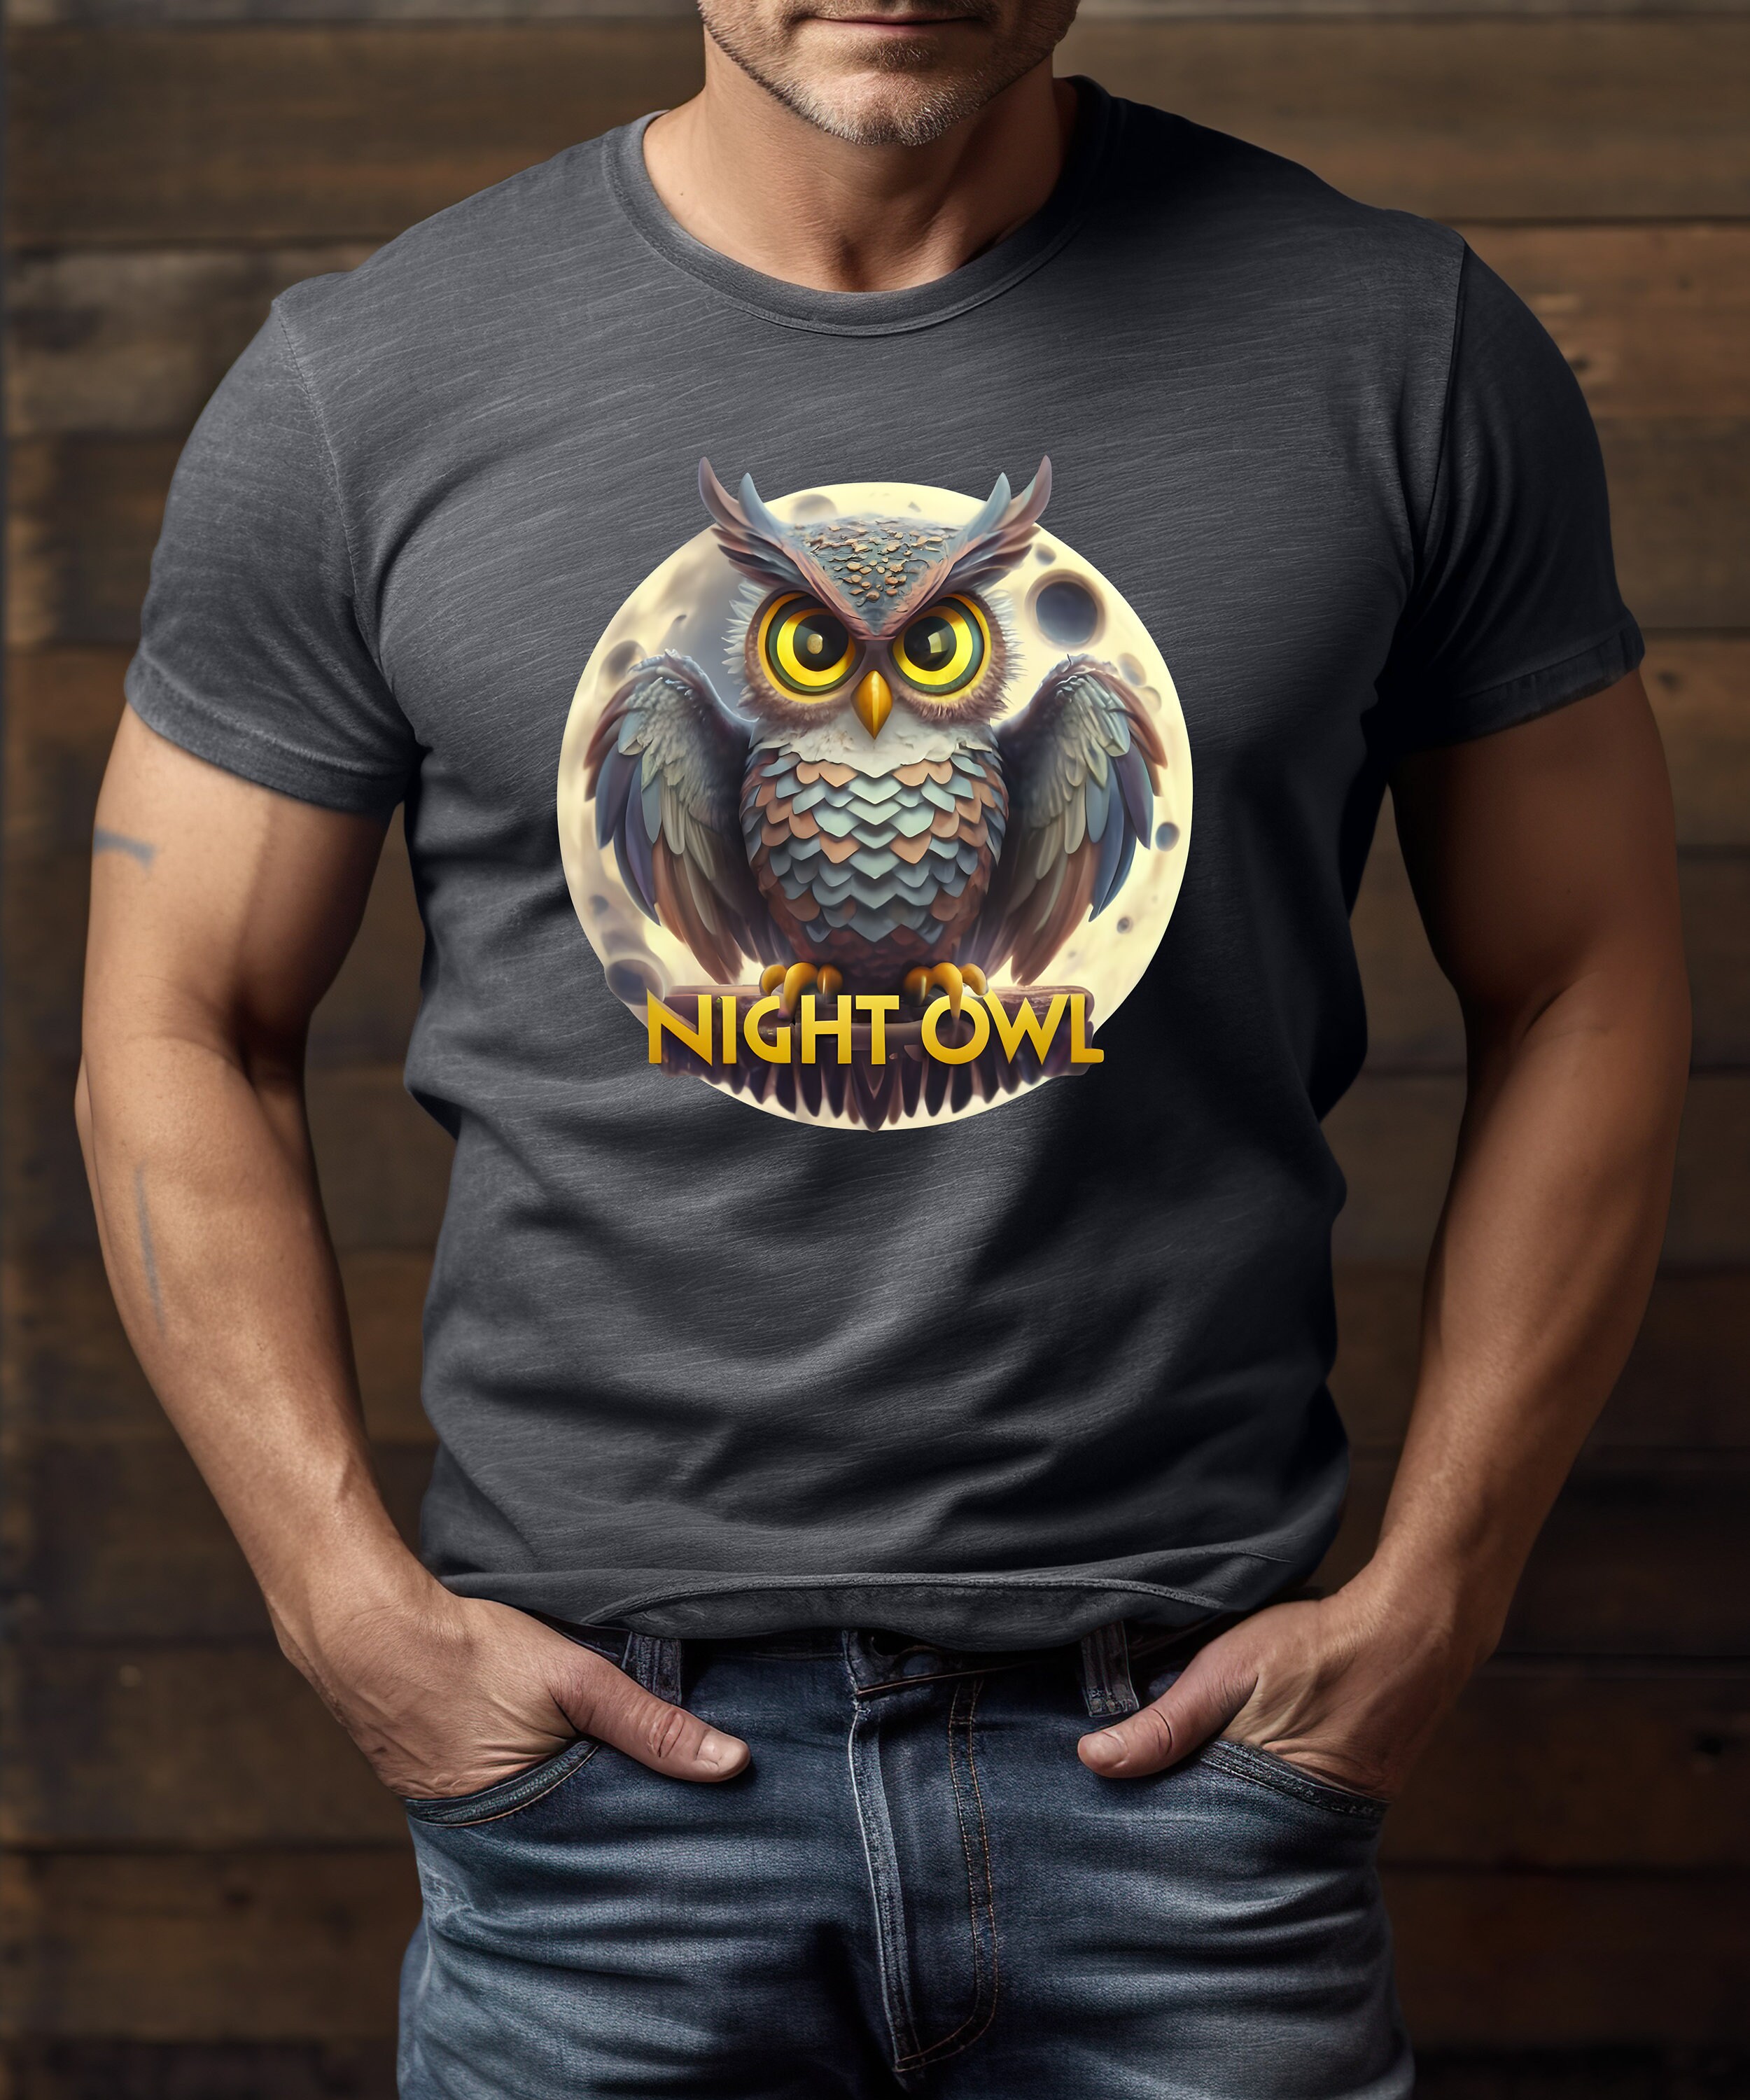 Night Owl T-Shirt, Owl shirt, Wilderness shirt, Nature shirt, Moon shirt, Gift shirt, Animal t shirt